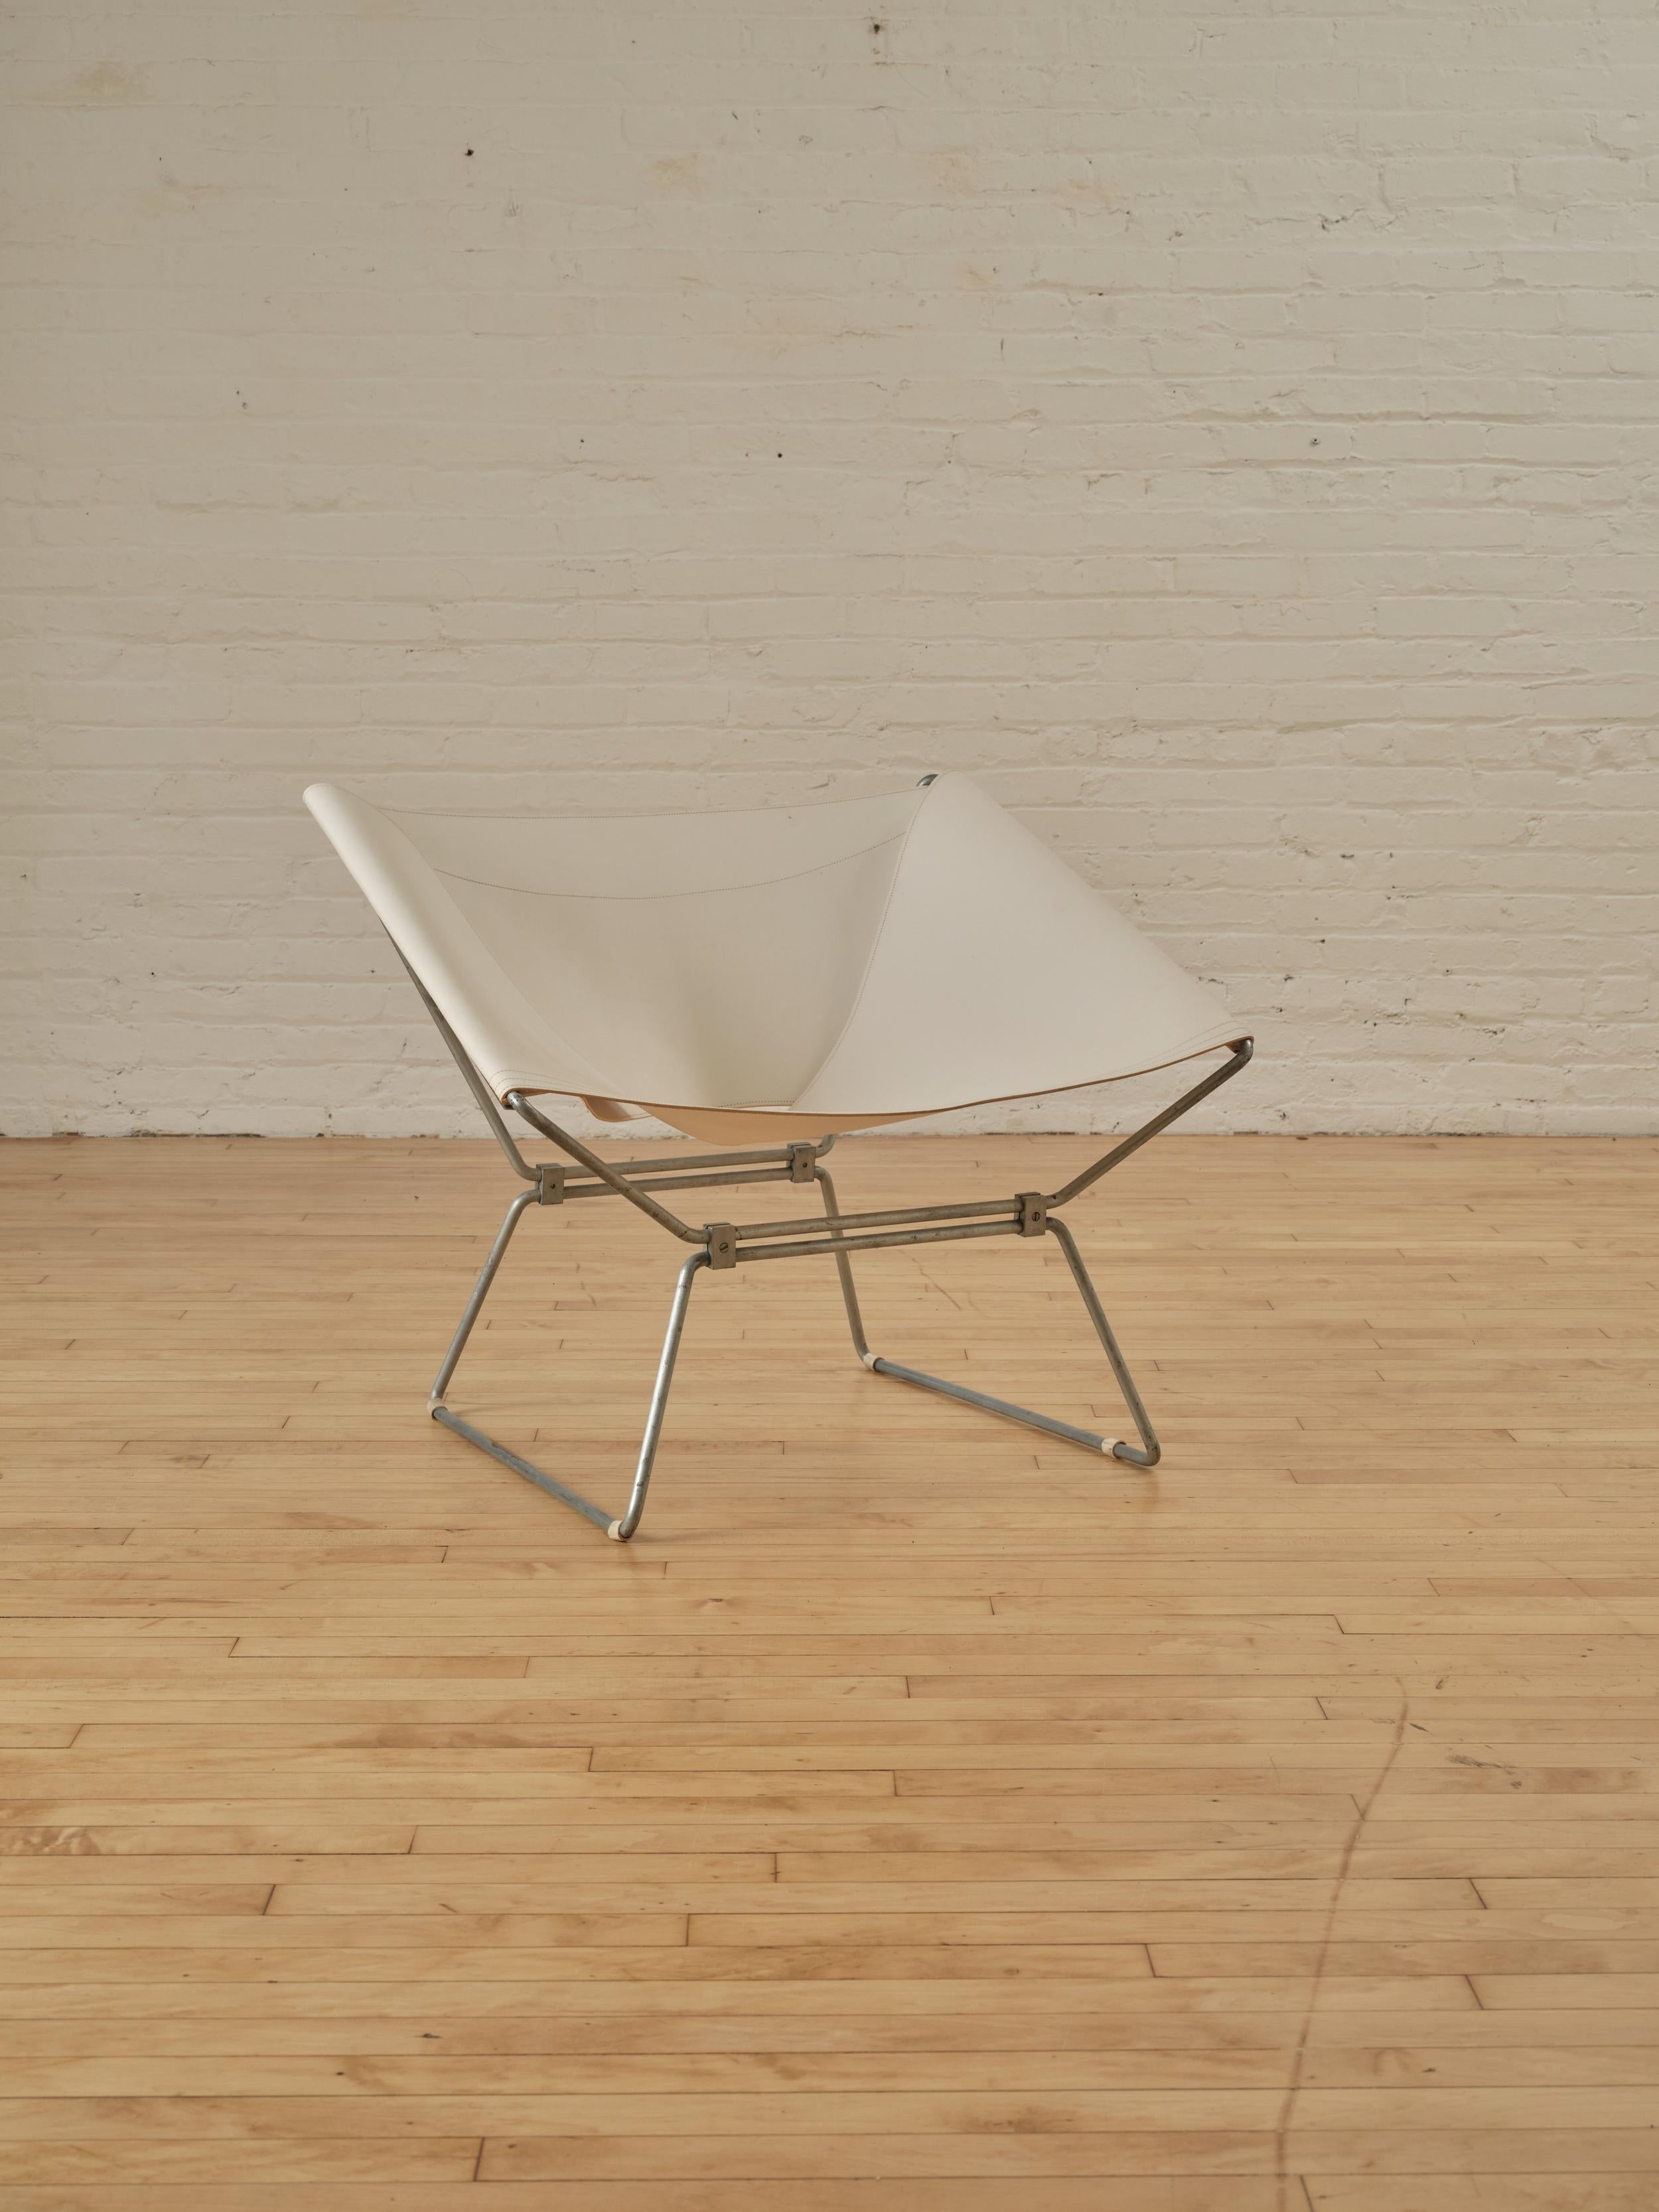 La chaise 'Anneau', conçue par Pierre Paulin pour AP Polak (Manufacturer)en 1955, se caractérise par une structure en acier tubulaire et un revêtement en cuir de selle blanc.

A propos de Pierre Paulin :

Pierre Paulin (1927-2009) était un designer